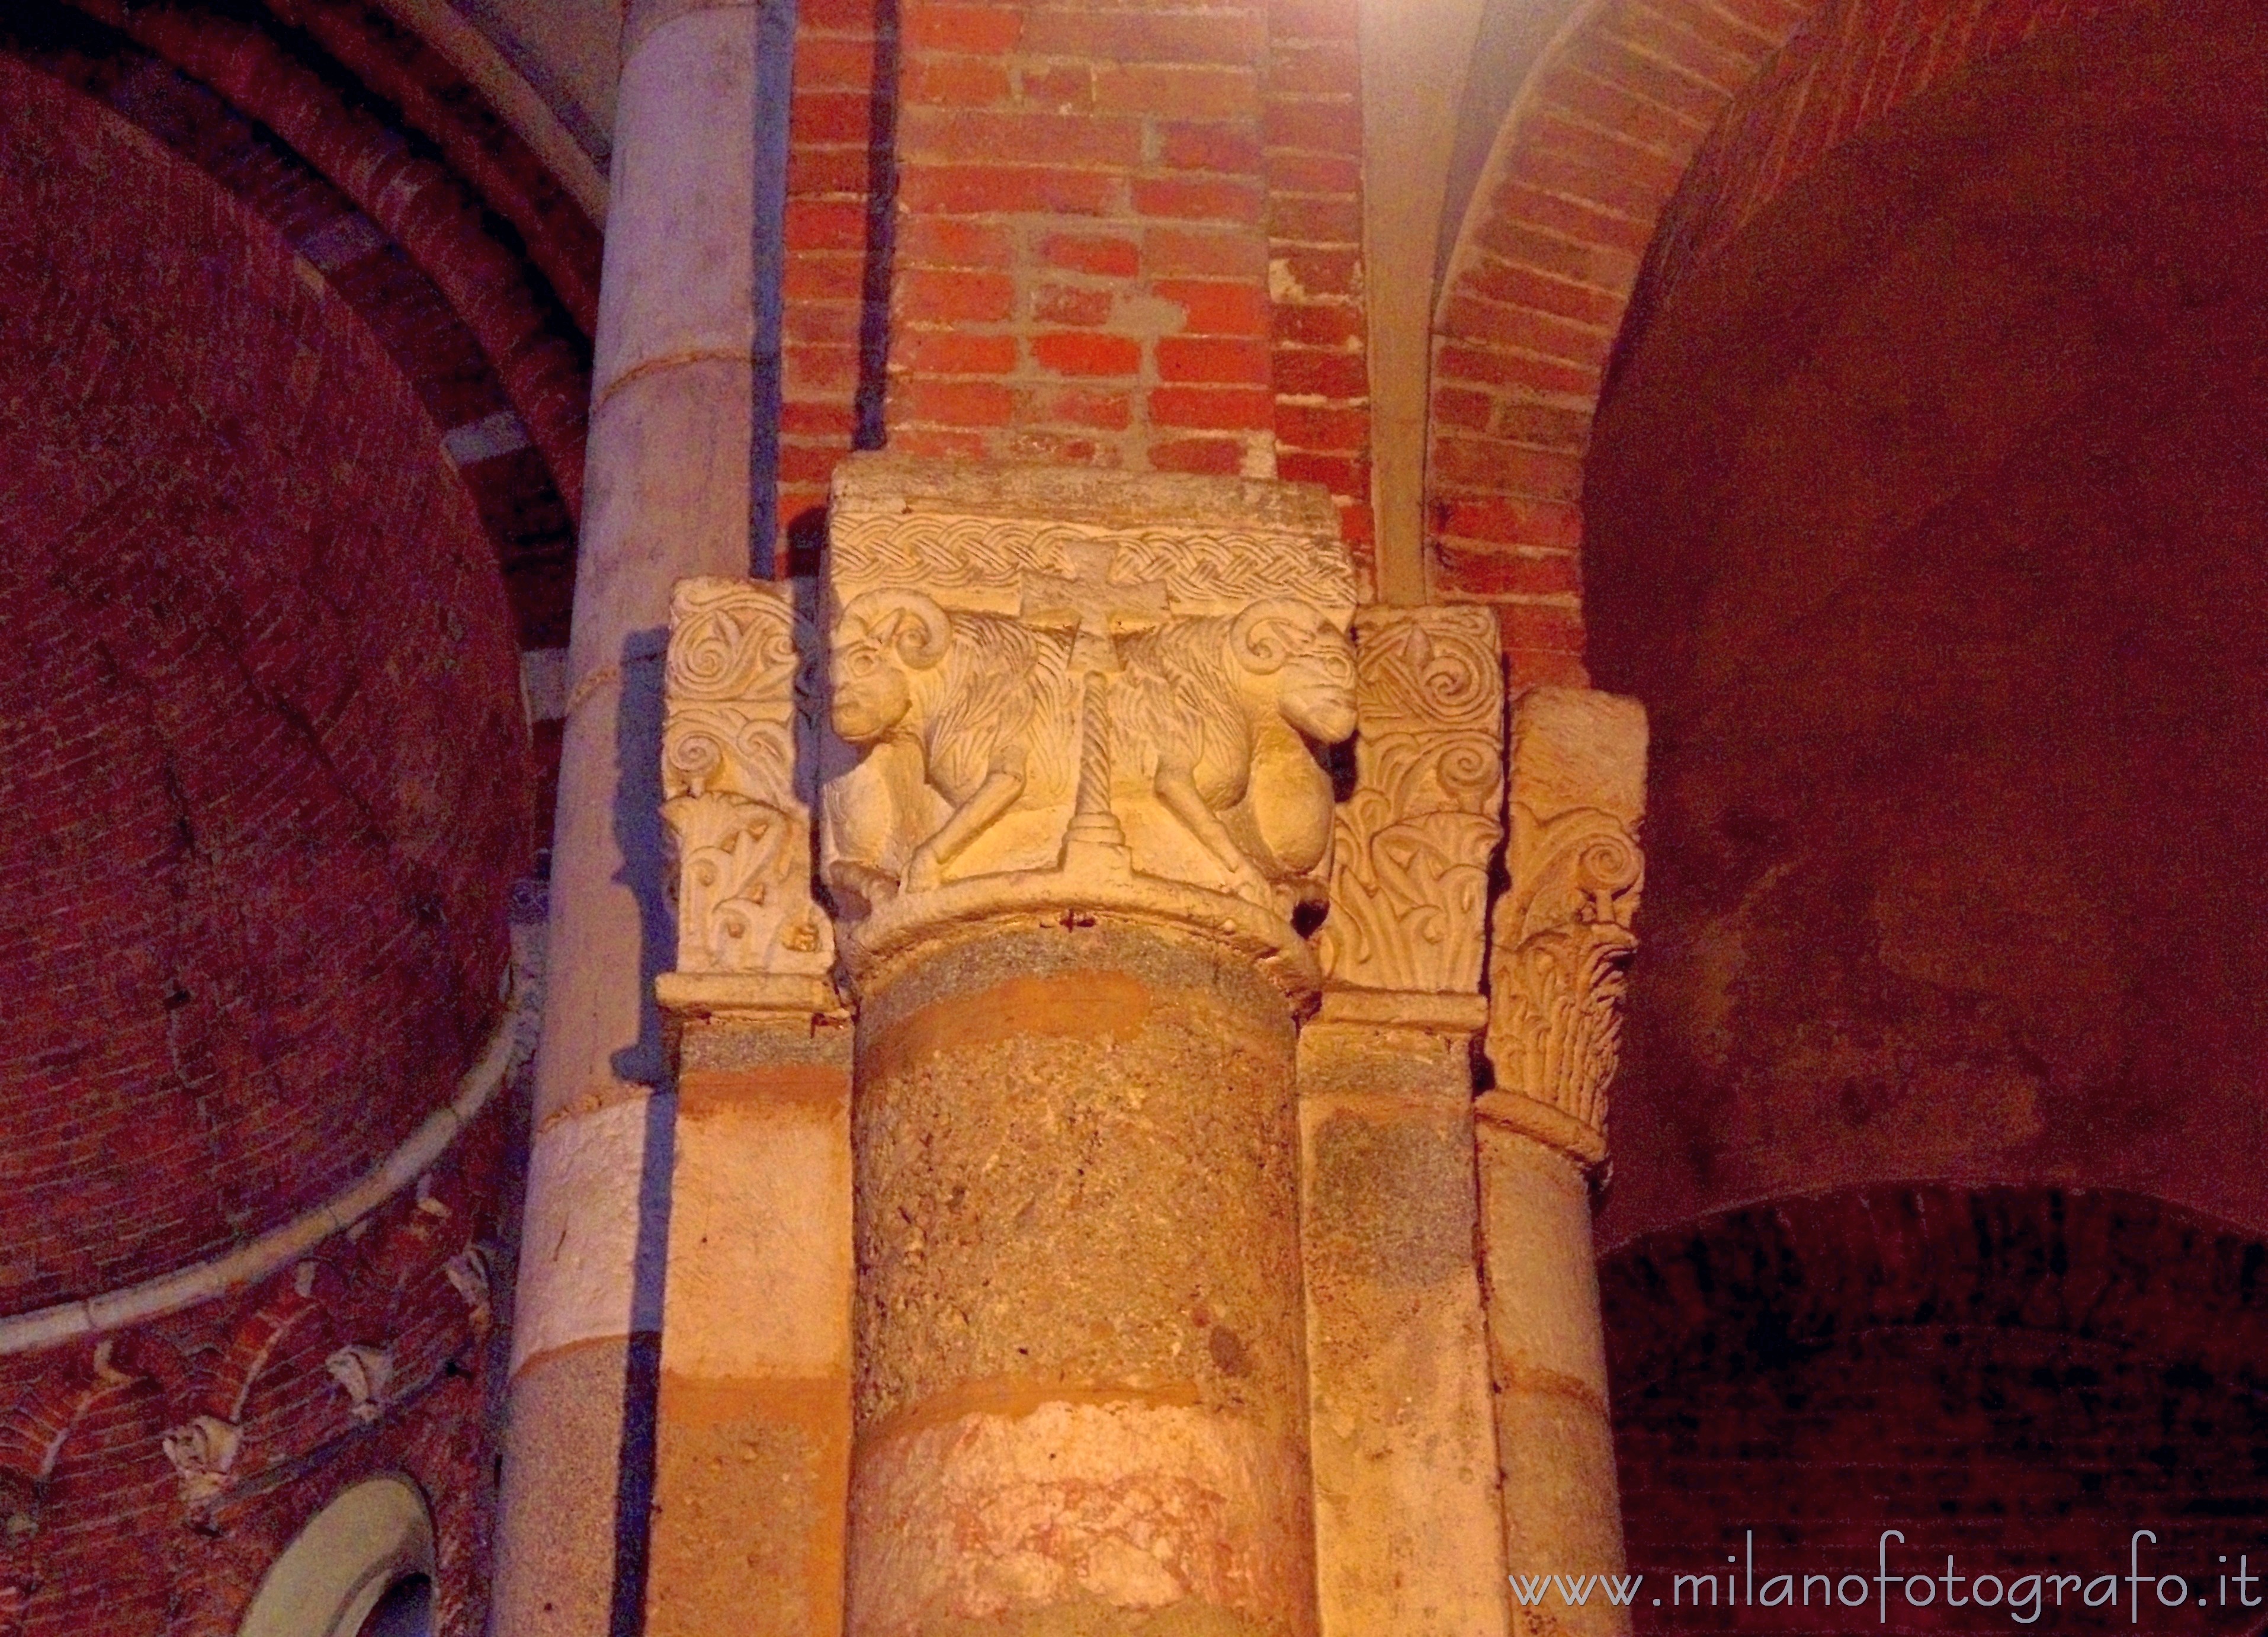 Milano: Capitello zoomorfo all'interno della Chiesa di San Celso - Milano